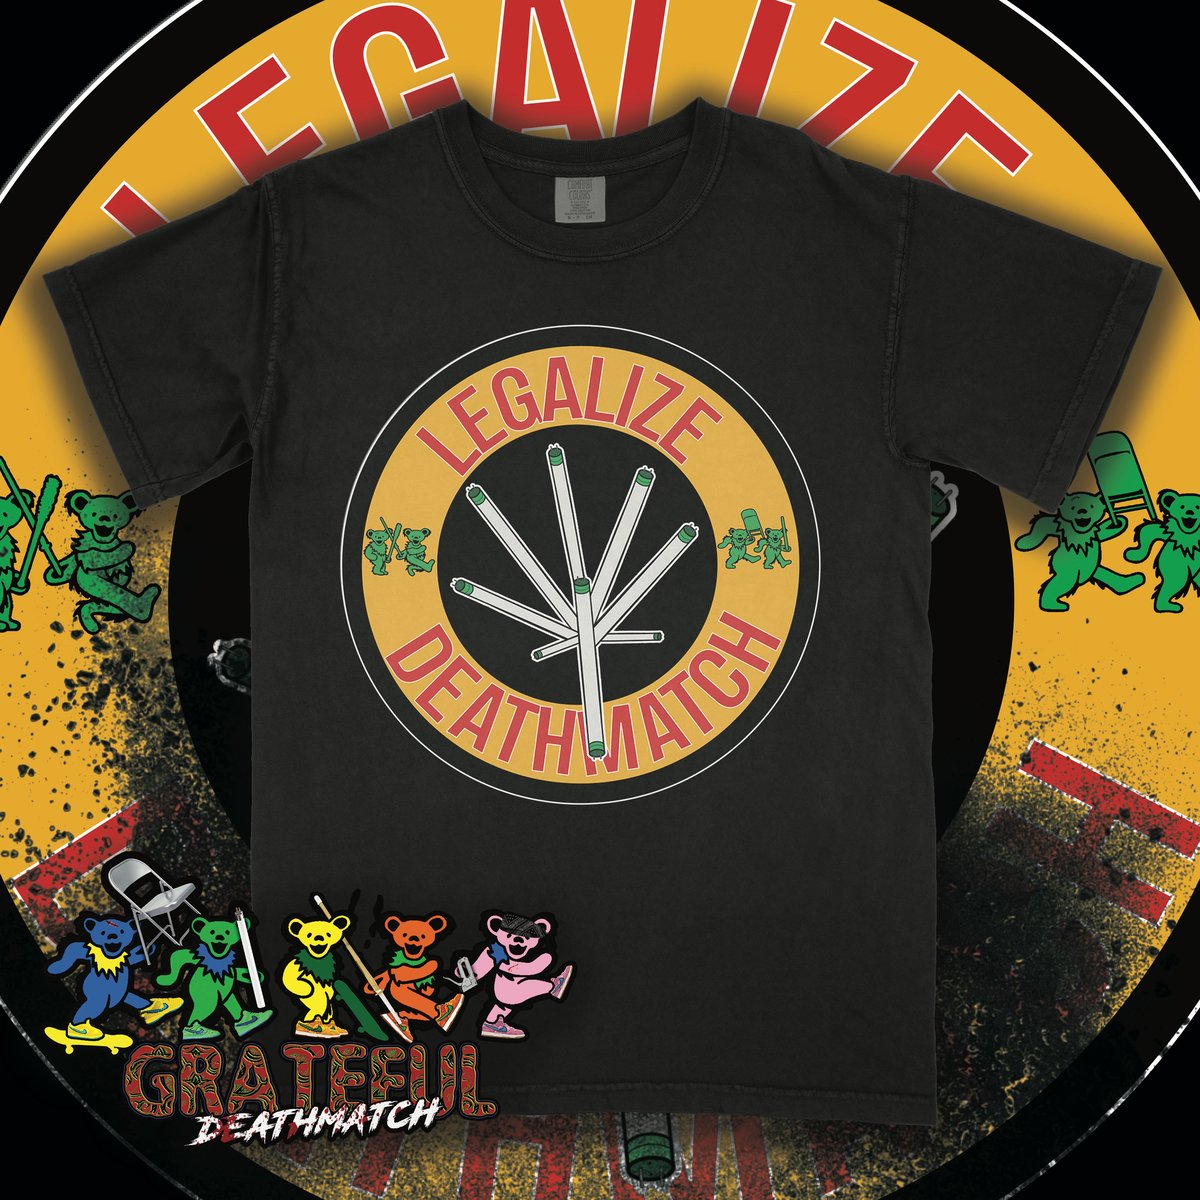 Legalize Deathmatch Shirt